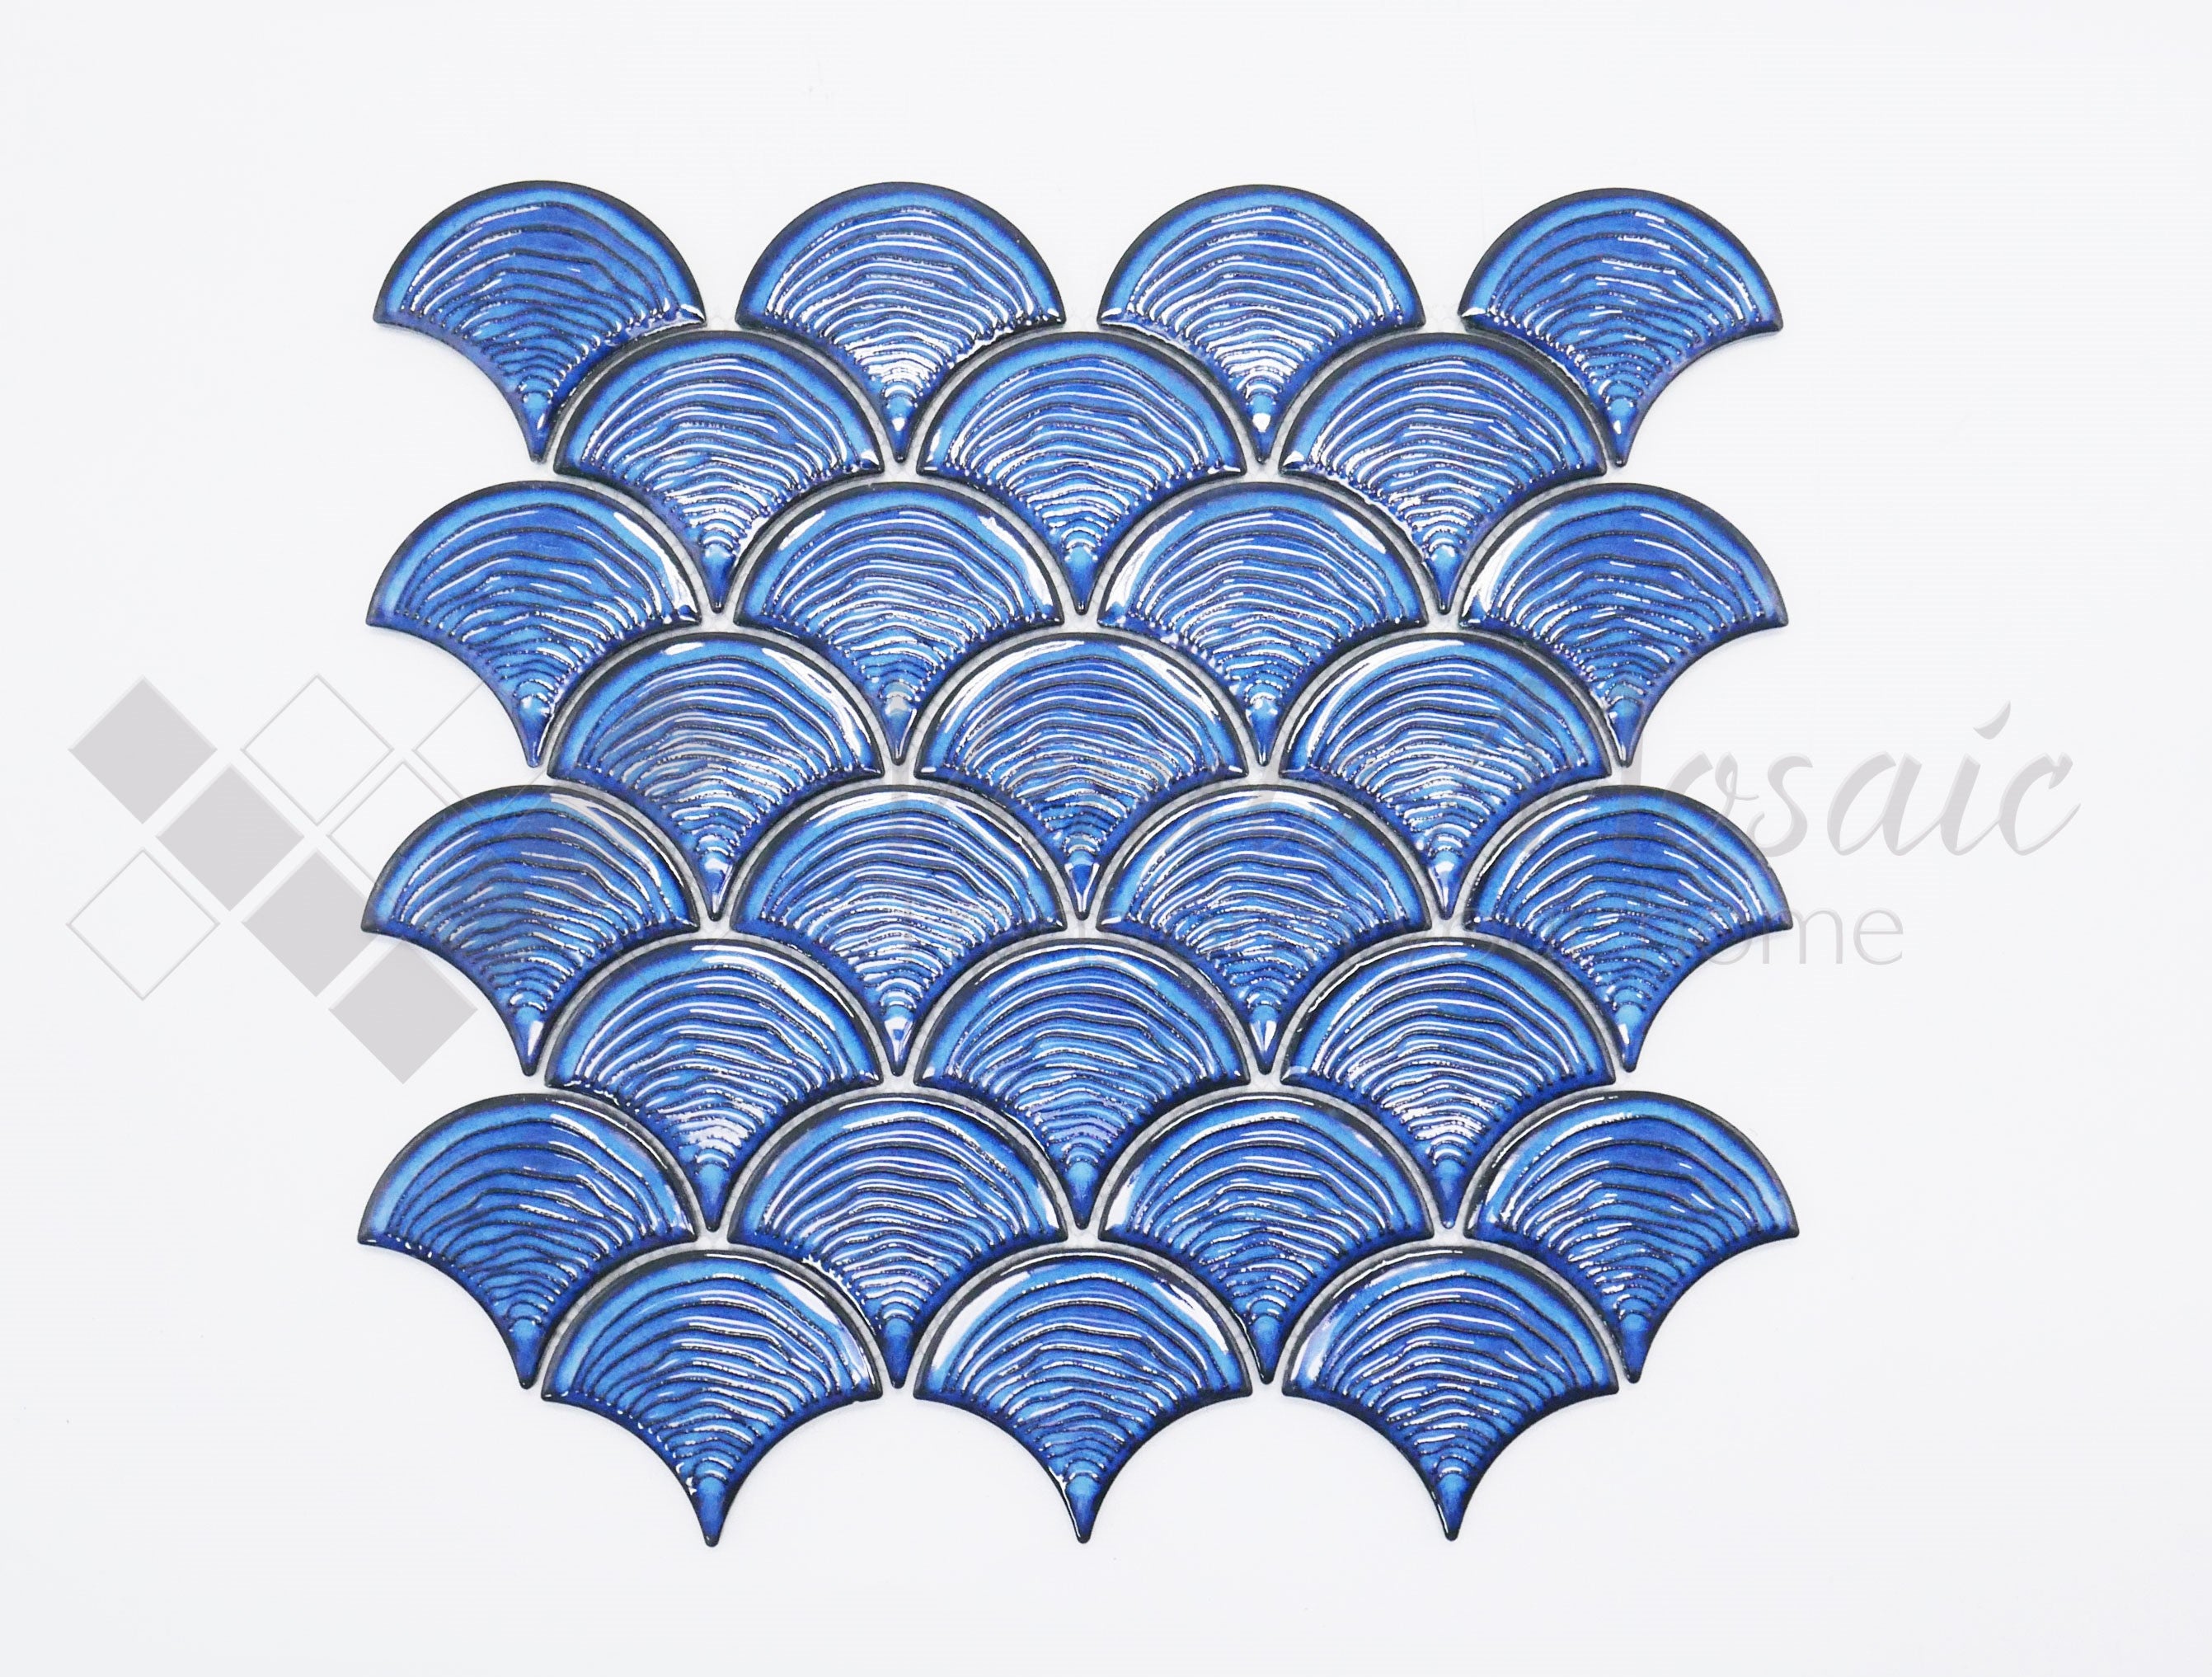 Venus Mosaic Porcelain Textured Scallop Tile